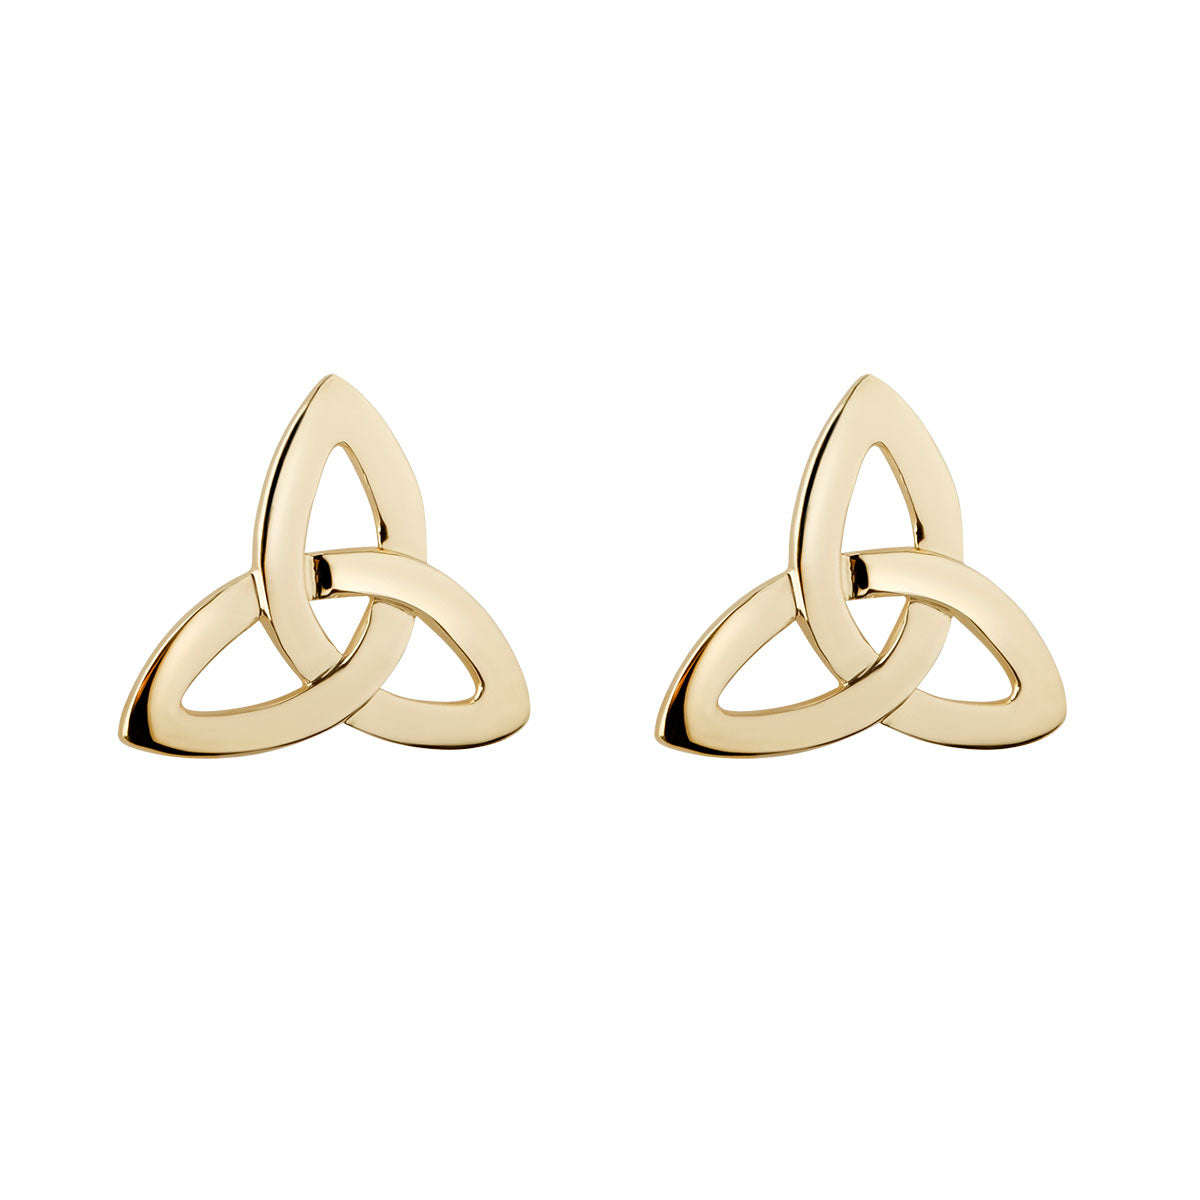 14k gold trinity knot stud earrings s3733 from Solvar